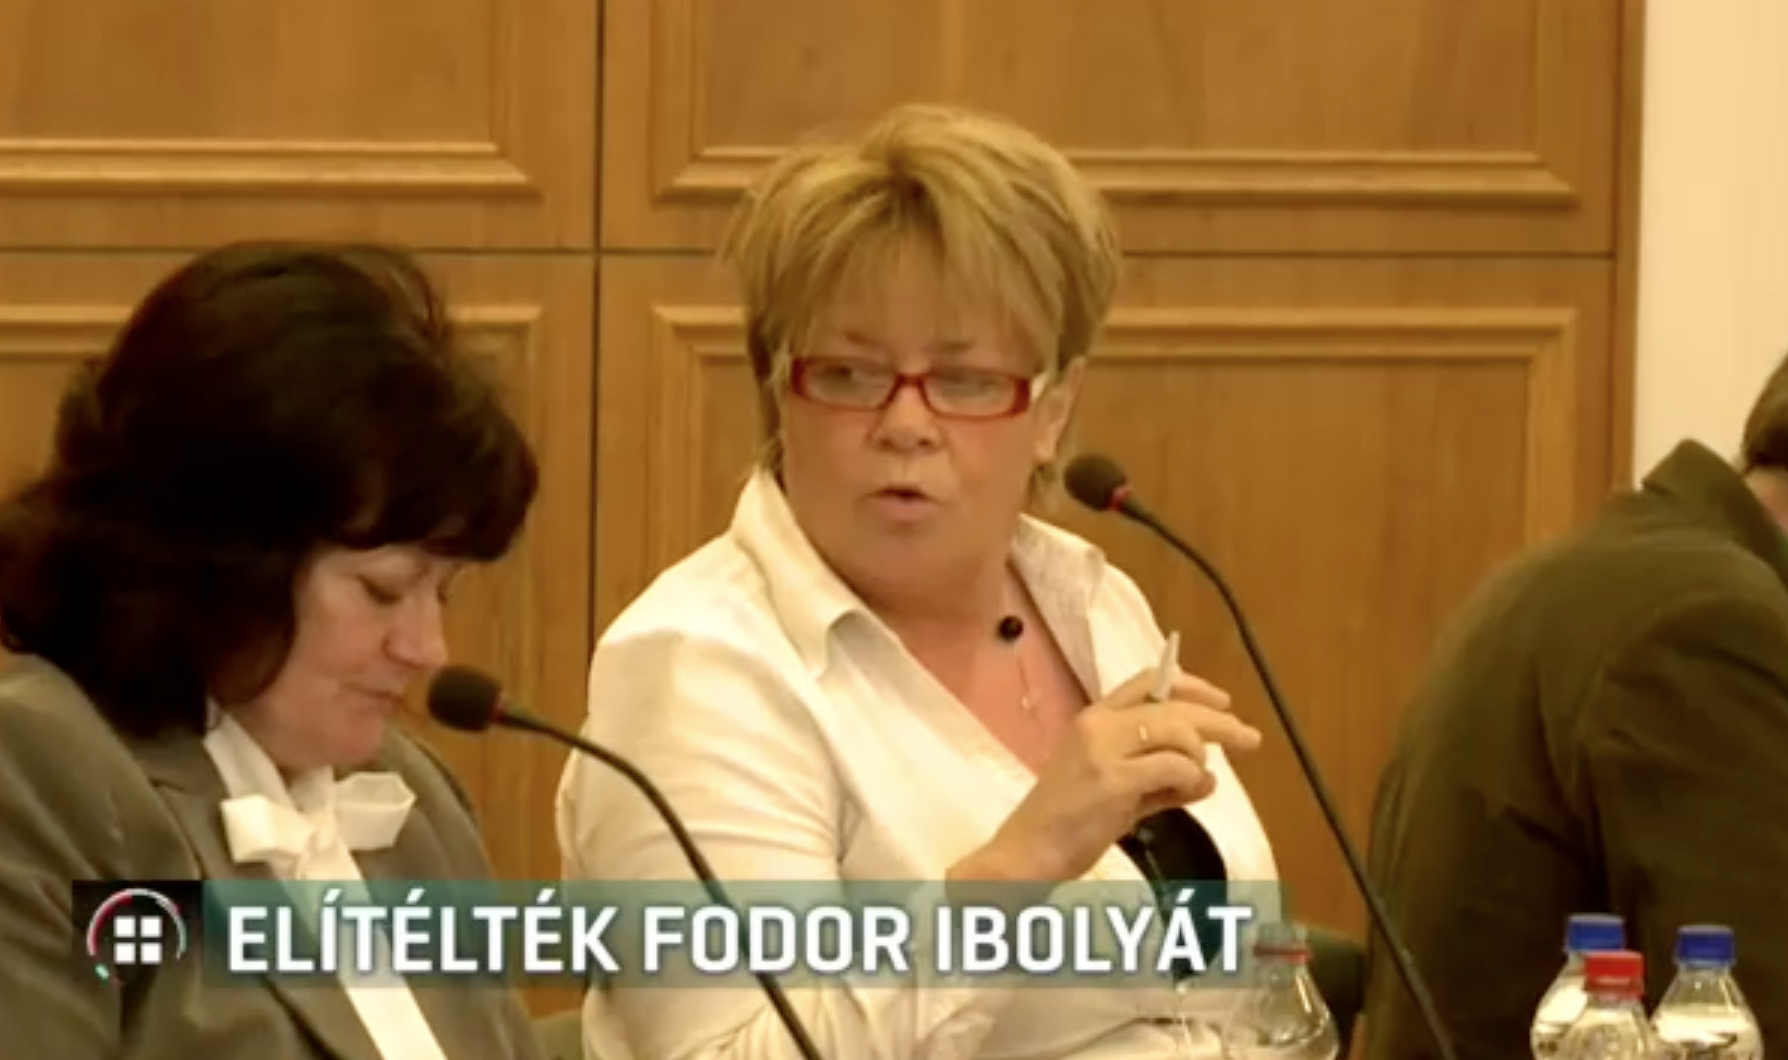 Költségvetési csalás miatt ítélték el a pécsi Fidesz egykori botrányhősét, Fodor Ibolyát